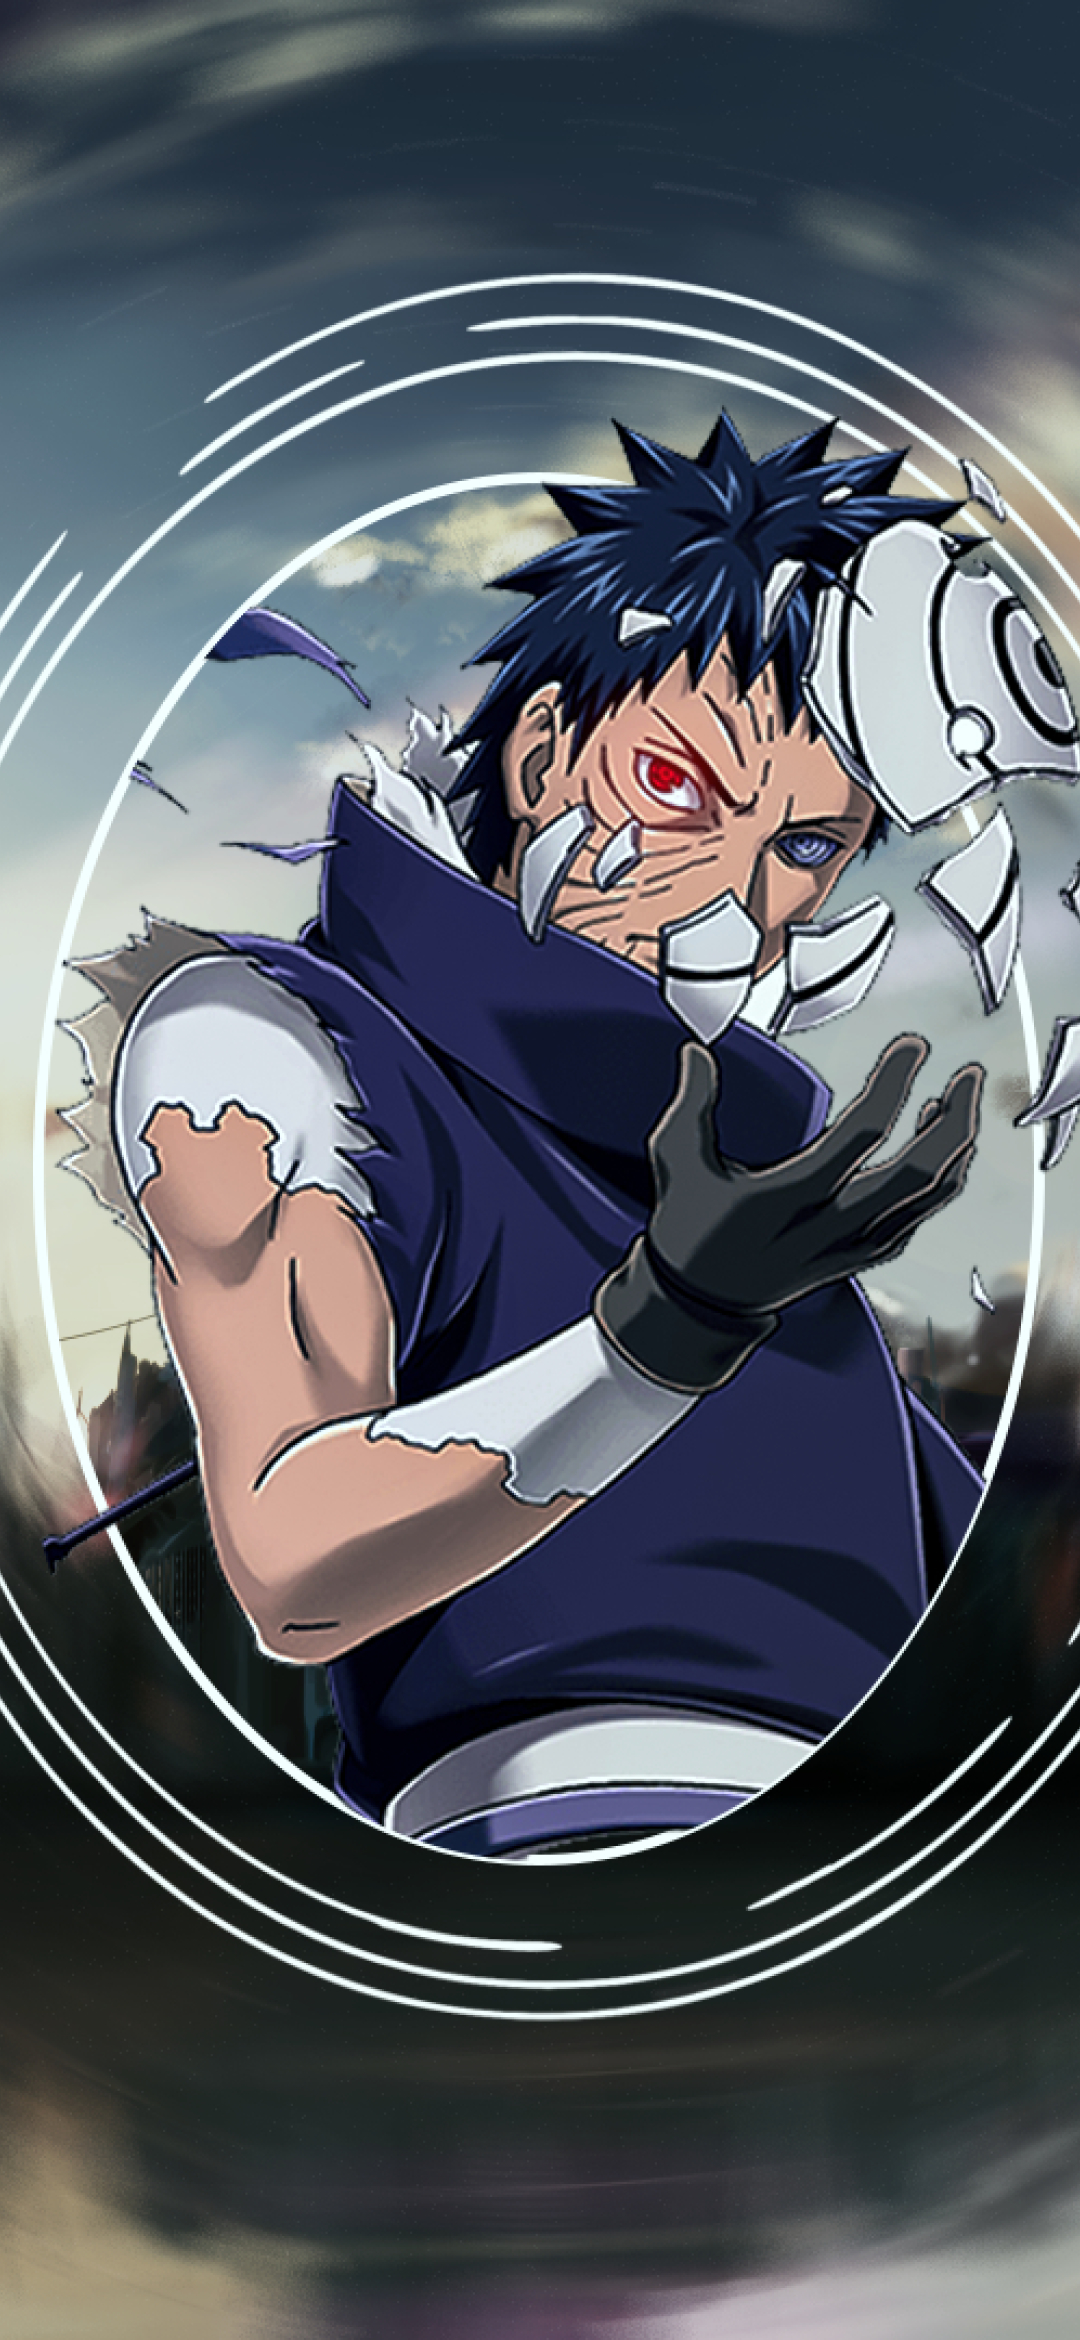 Hãy xem hình nền Obito đeo mặt nạ để thấy sự bí ẩn và đầy cuốn hút của nhân vật này trong Naruto. Hình ảnh sẽ giúp bạn khám phá thêm về Obito và các tính cách thú vị của anh ta.